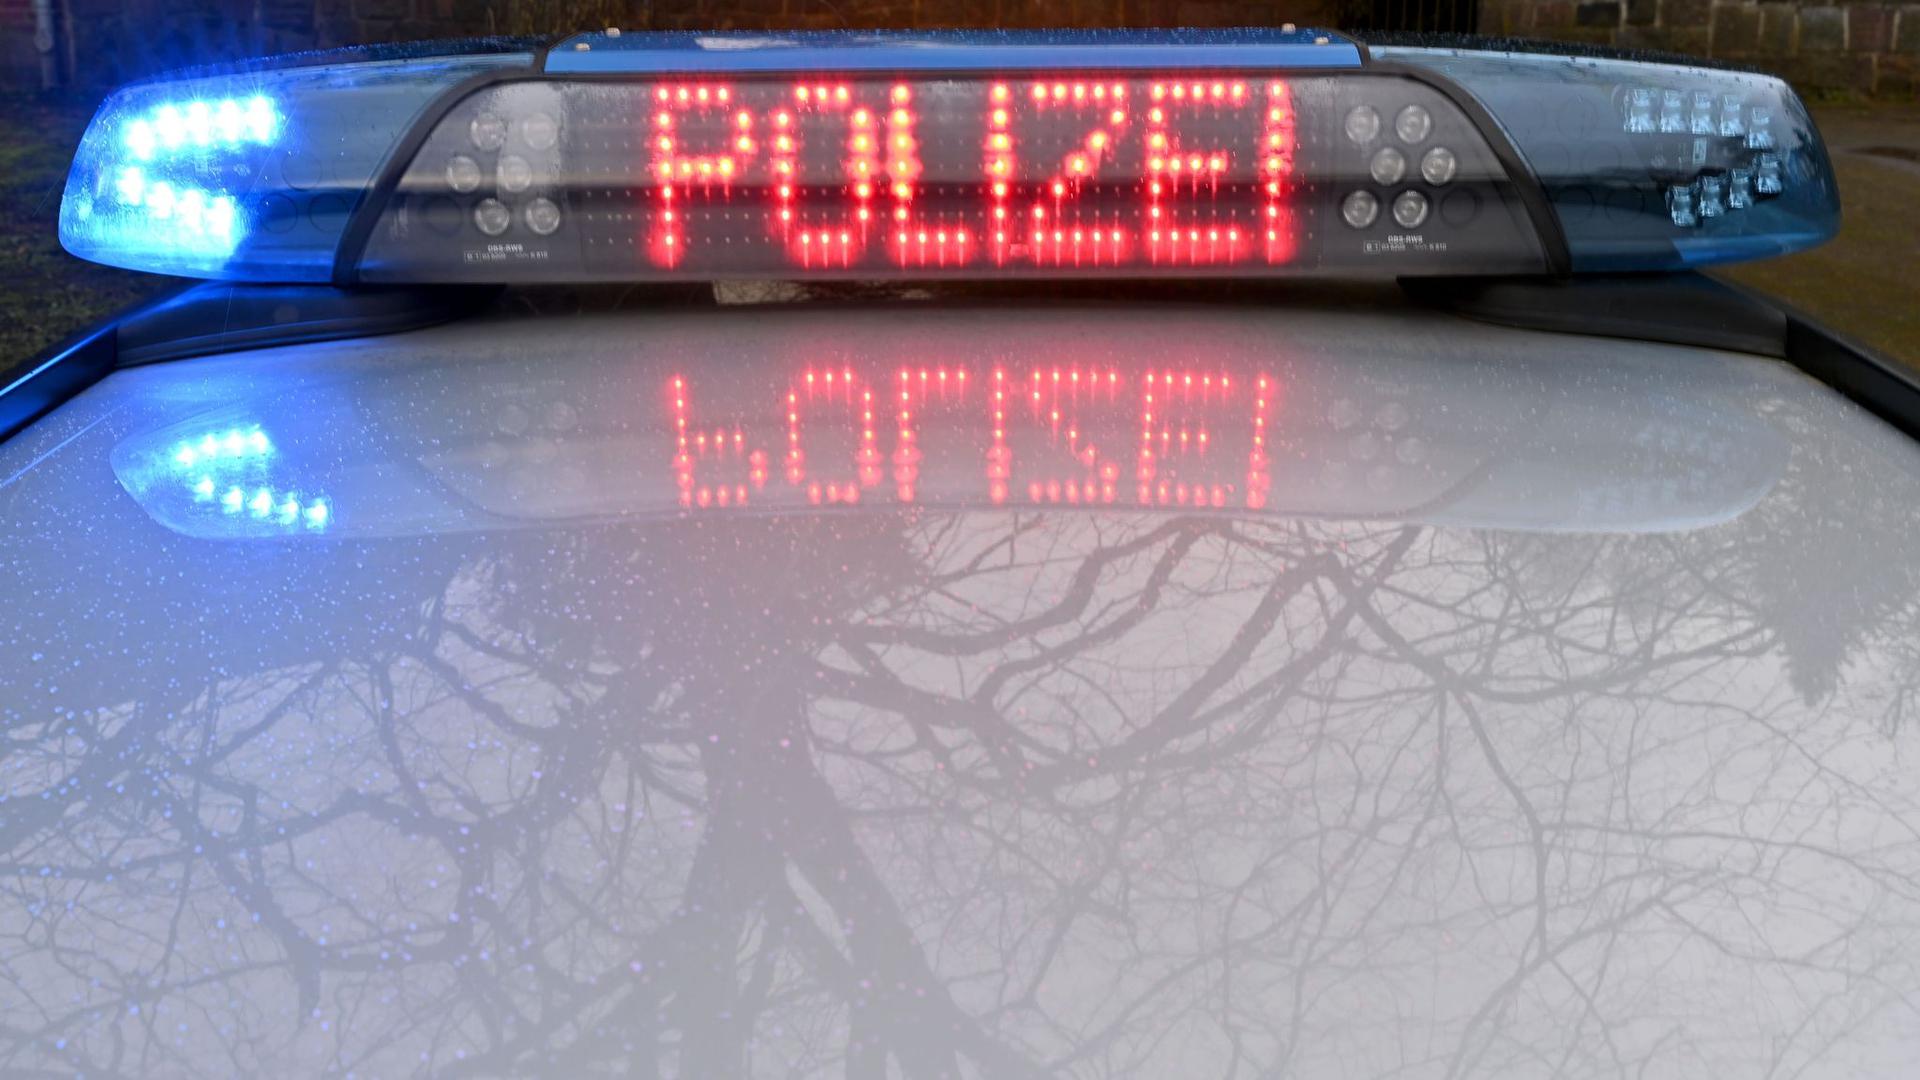 ARCHIV - Streifenwagen der Polizei. (Symbolbild) Foto: Carsten Rehder/dpa/Symbolbild